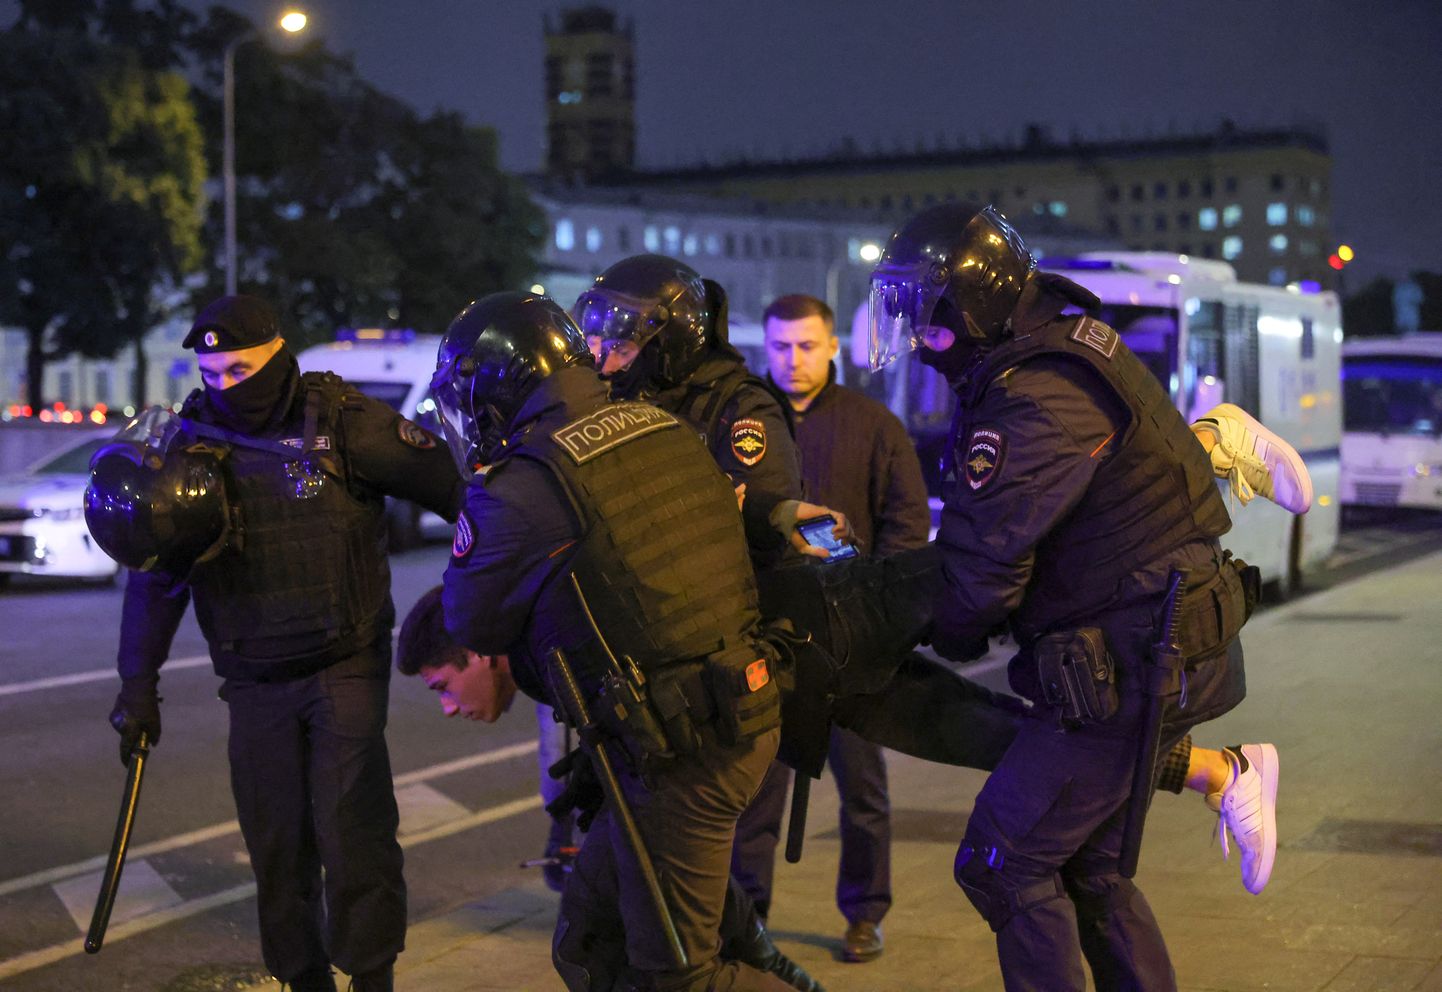 Vene politseiametnikud arreteerimas protestil osalenud inimest.